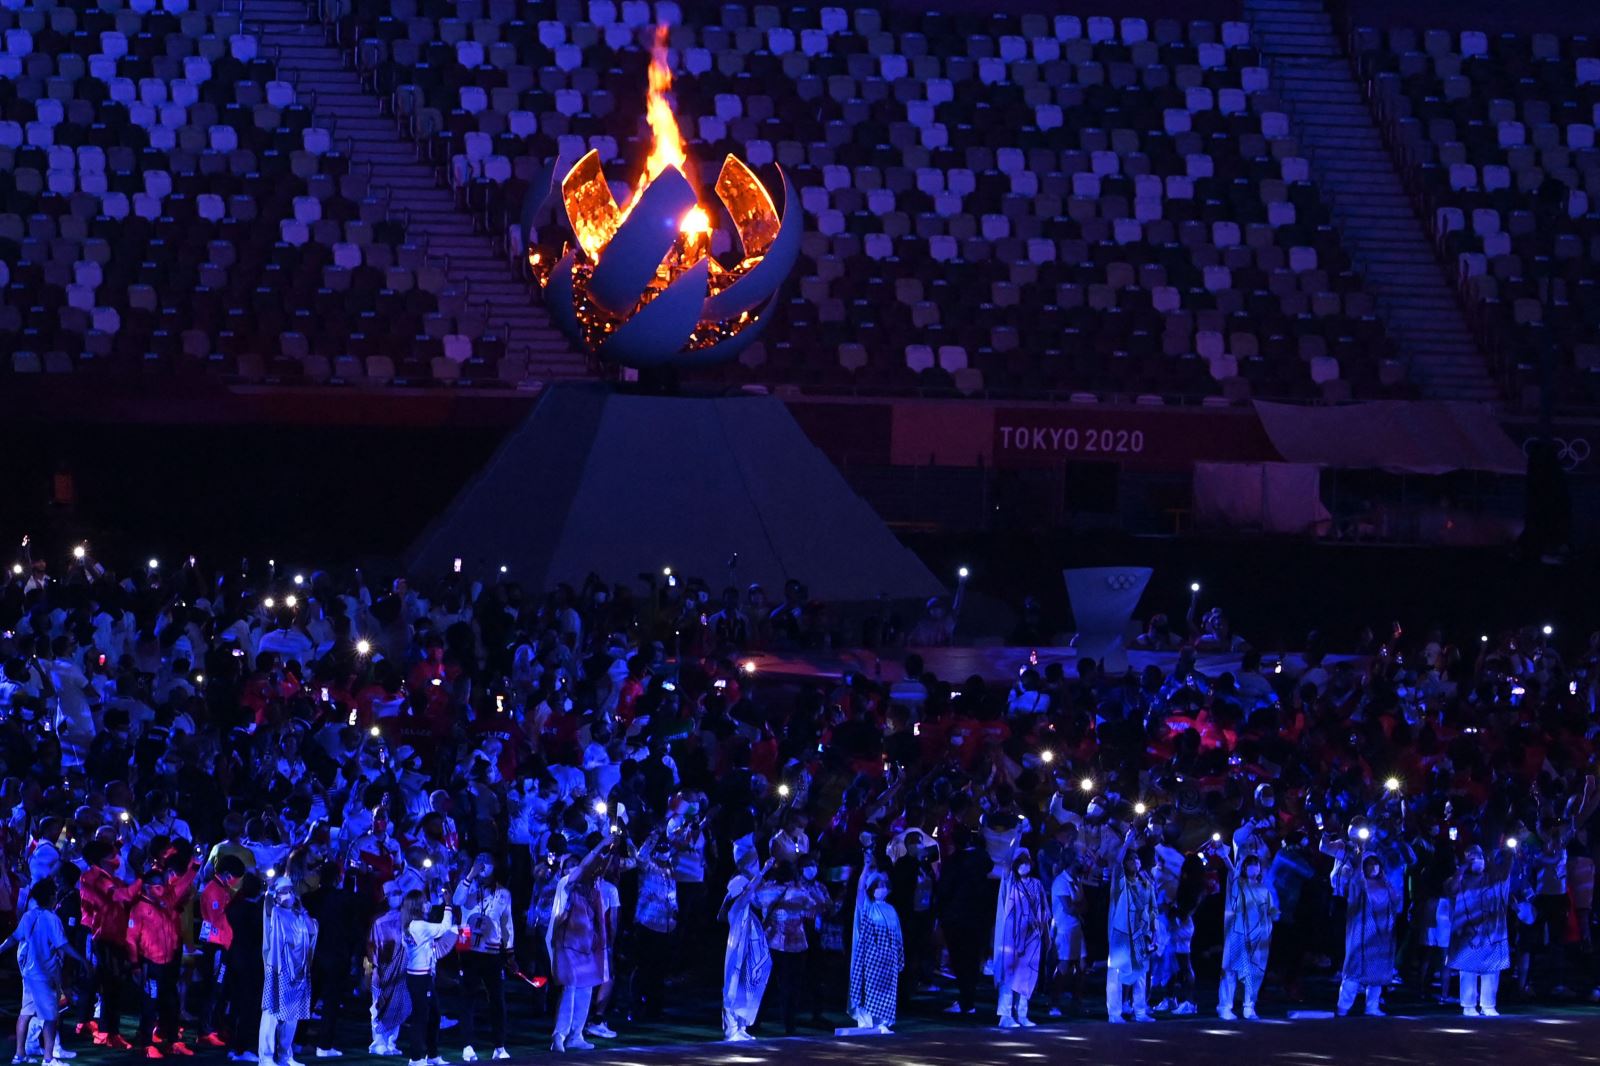 Đoàn vận động viên các nước bên cạnh ngọn đuốc Olympic Tokyo 2020. Ảnh: Getty Images